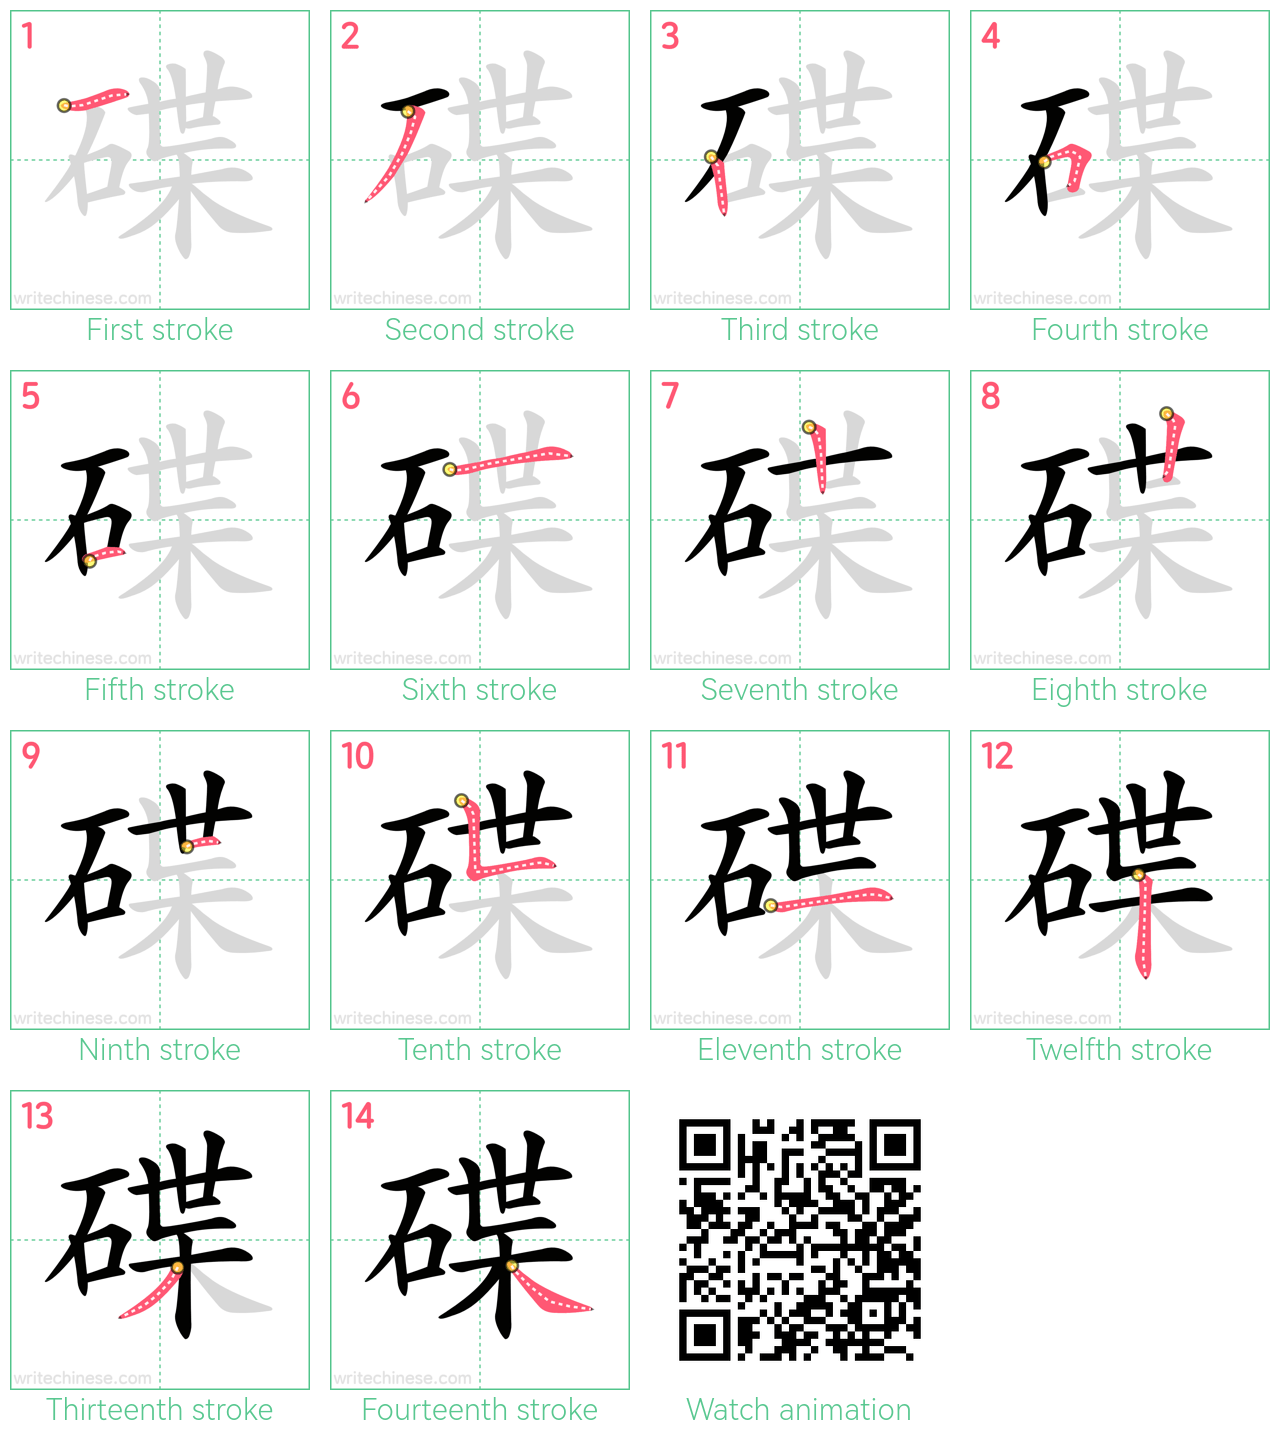 碟 step-by-step stroke order diagrams